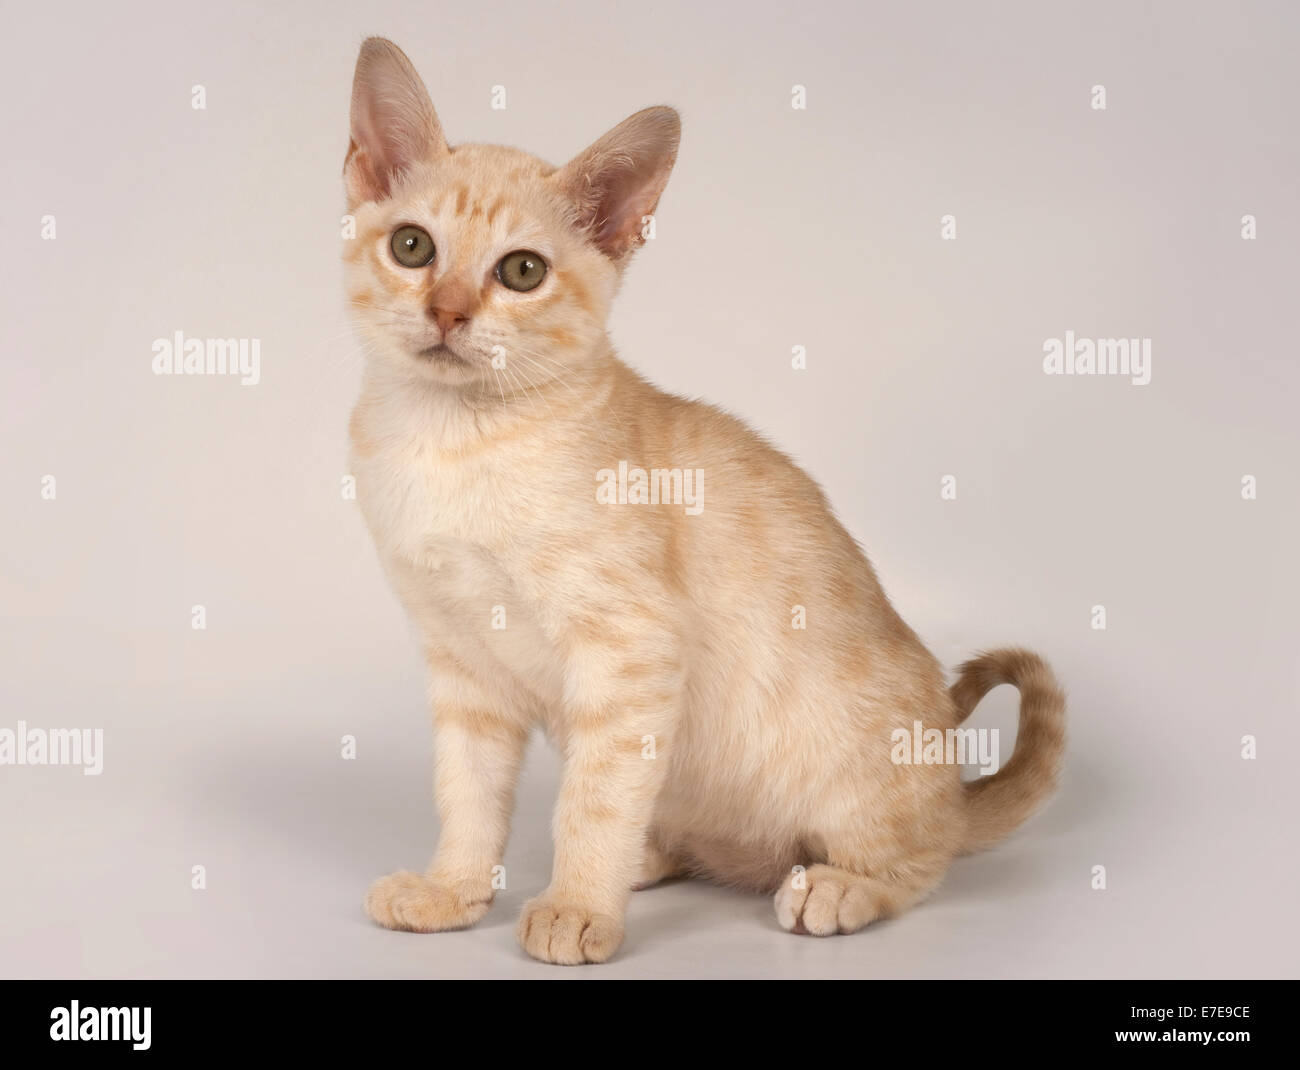 Australian Mist kitten Stock Photo - Alamy